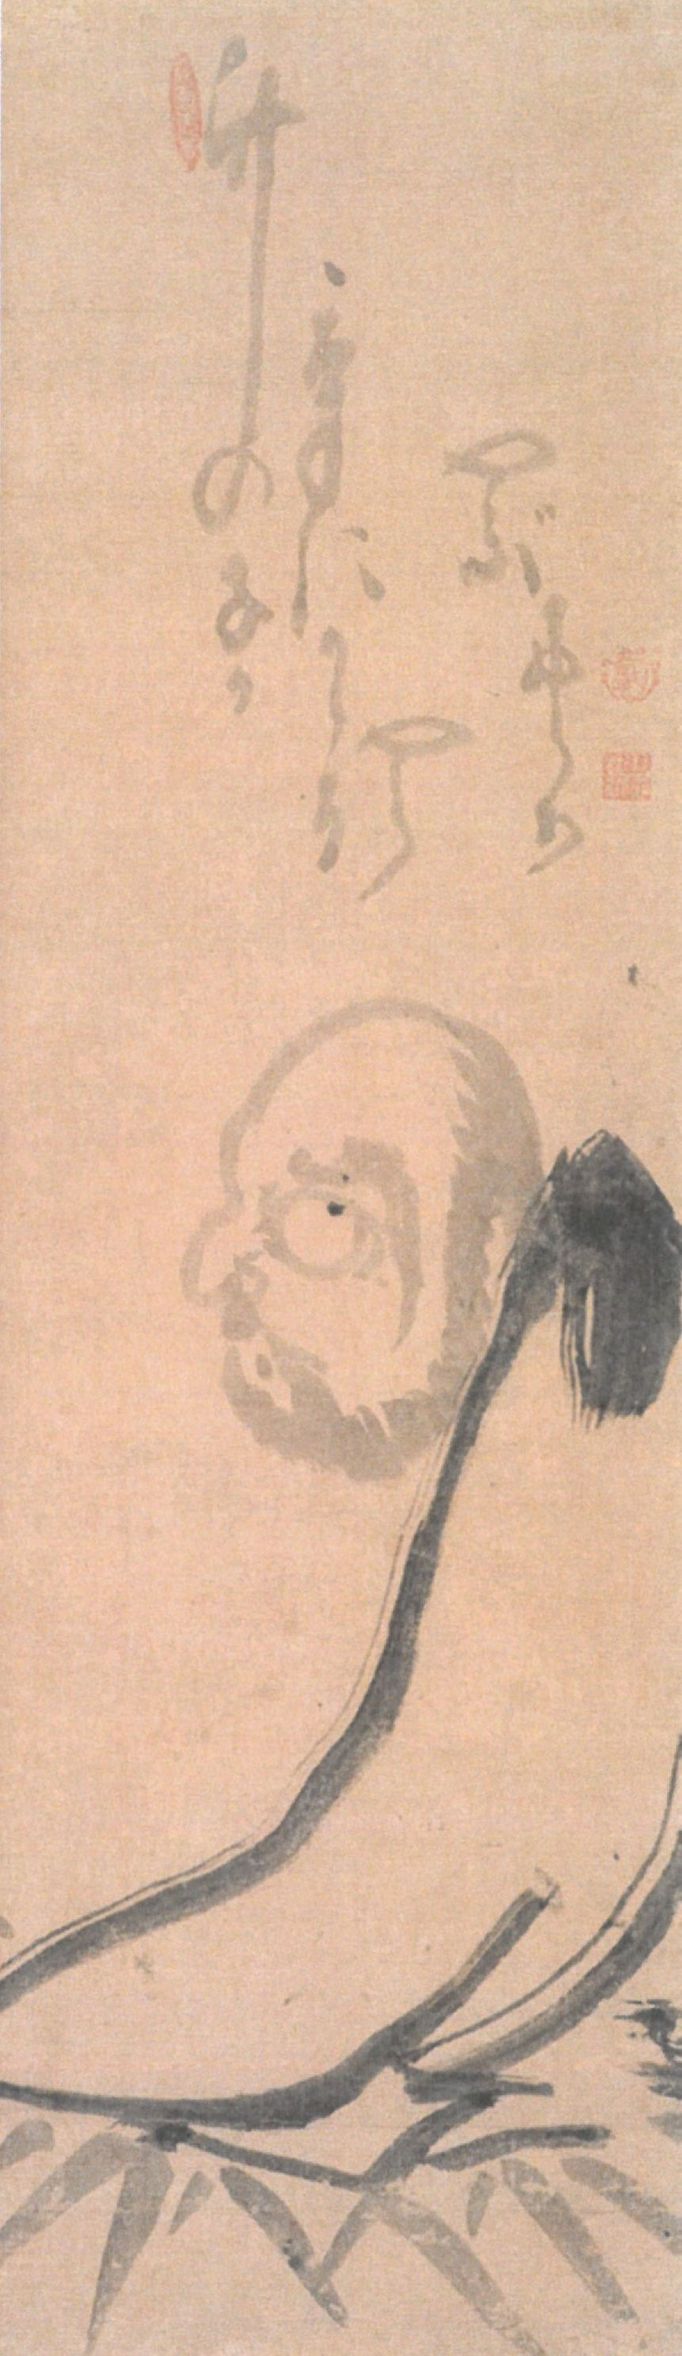 Patriarcha zenové školy Daruma na svitku japonské zenové malby od Hakuina Ekakua ze sbírky Felixe Hesse, kterou darem získala Národní galerie.